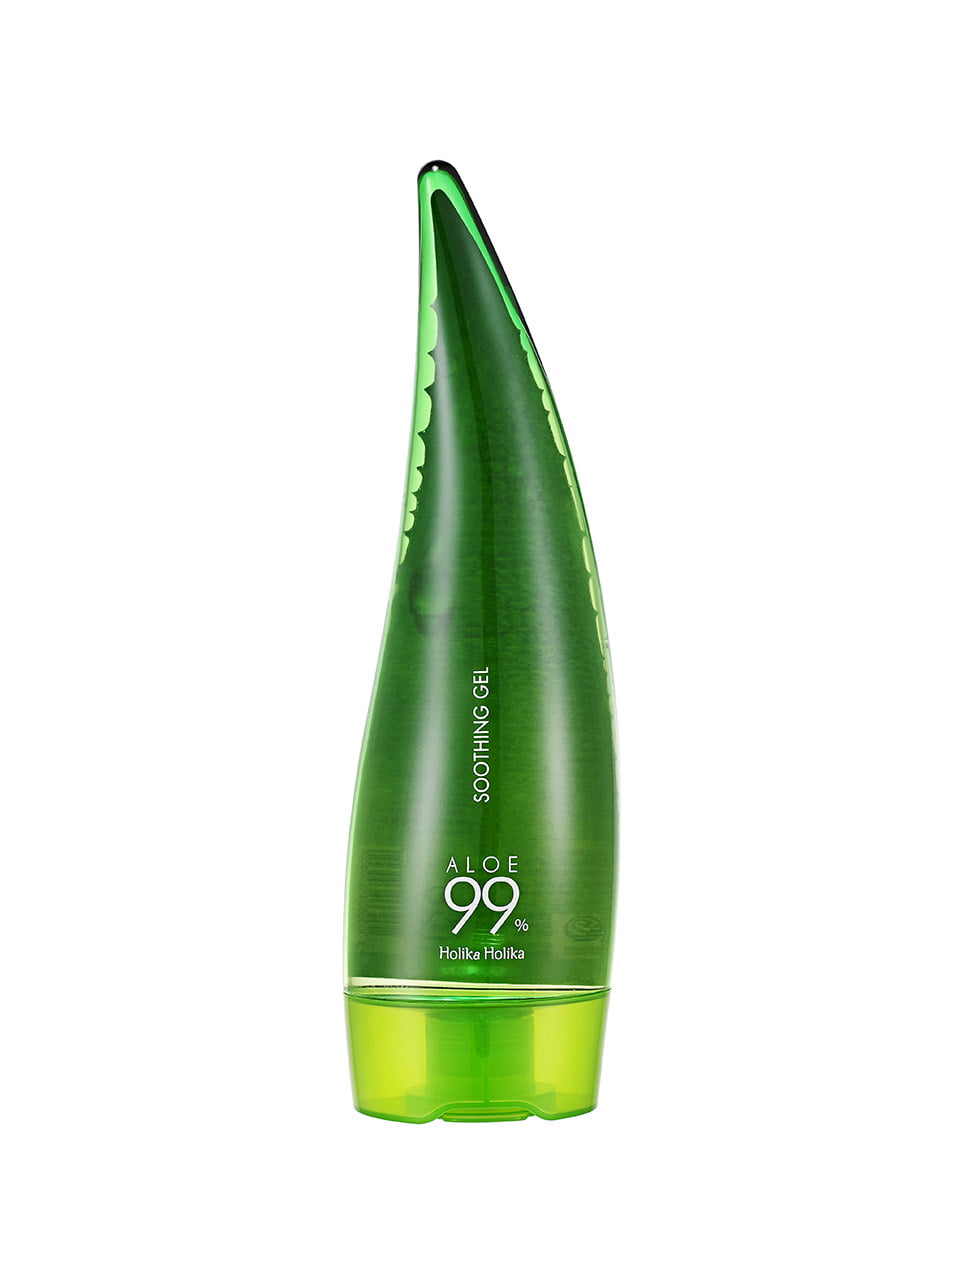 Aloe 99% Soothing Gel 250ml | Holika Holika Holika Holika imagine